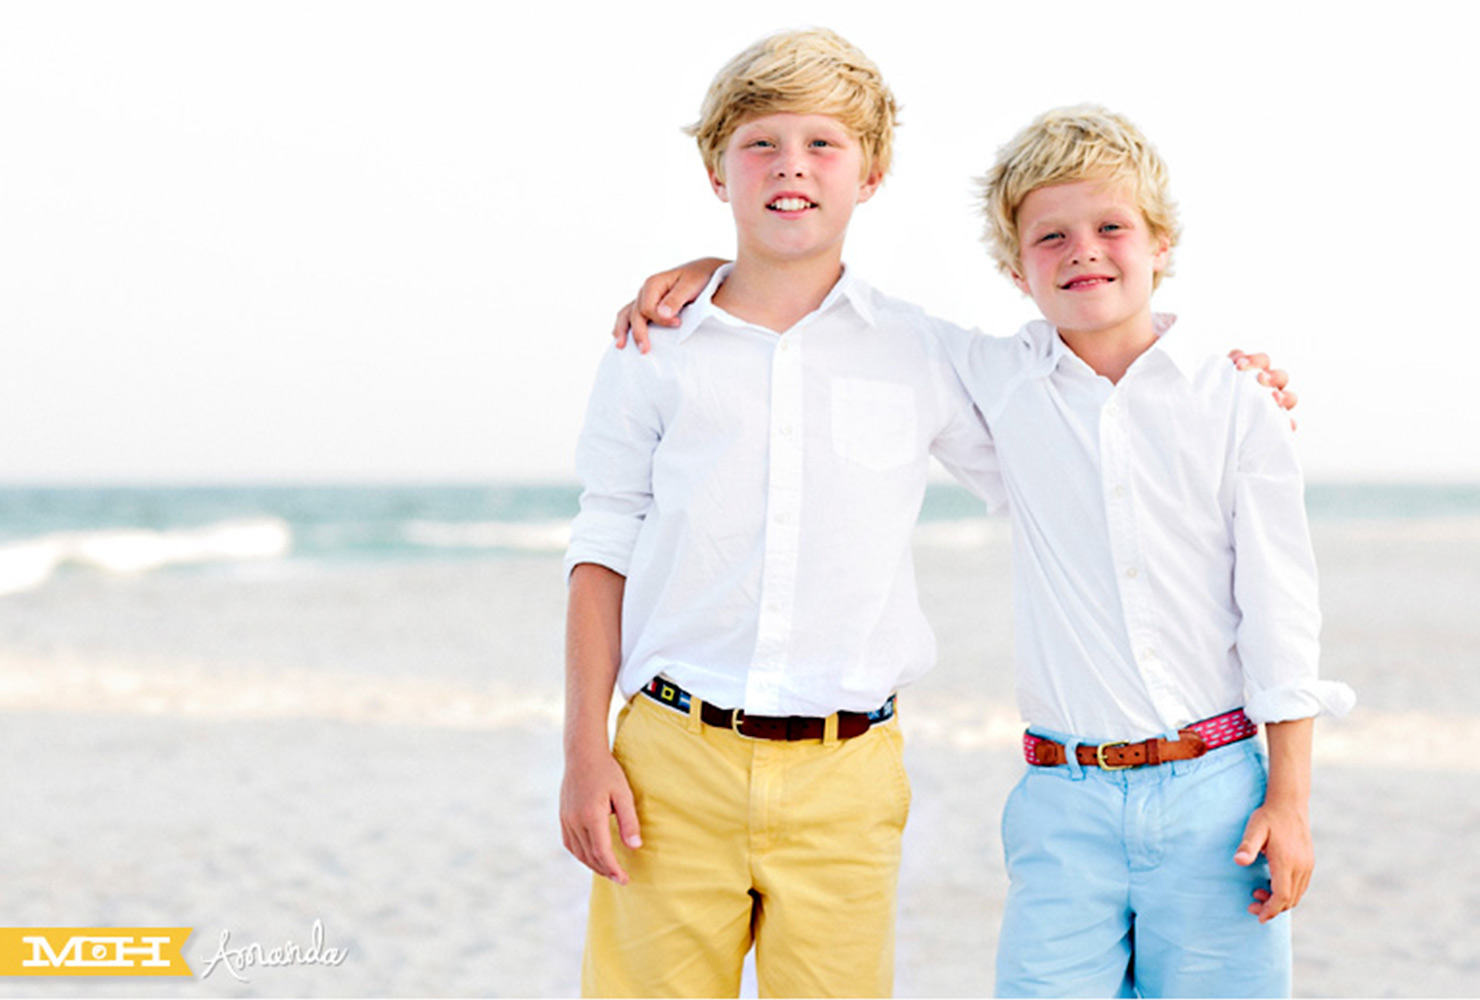 sibling photo ideas blonde boys beach